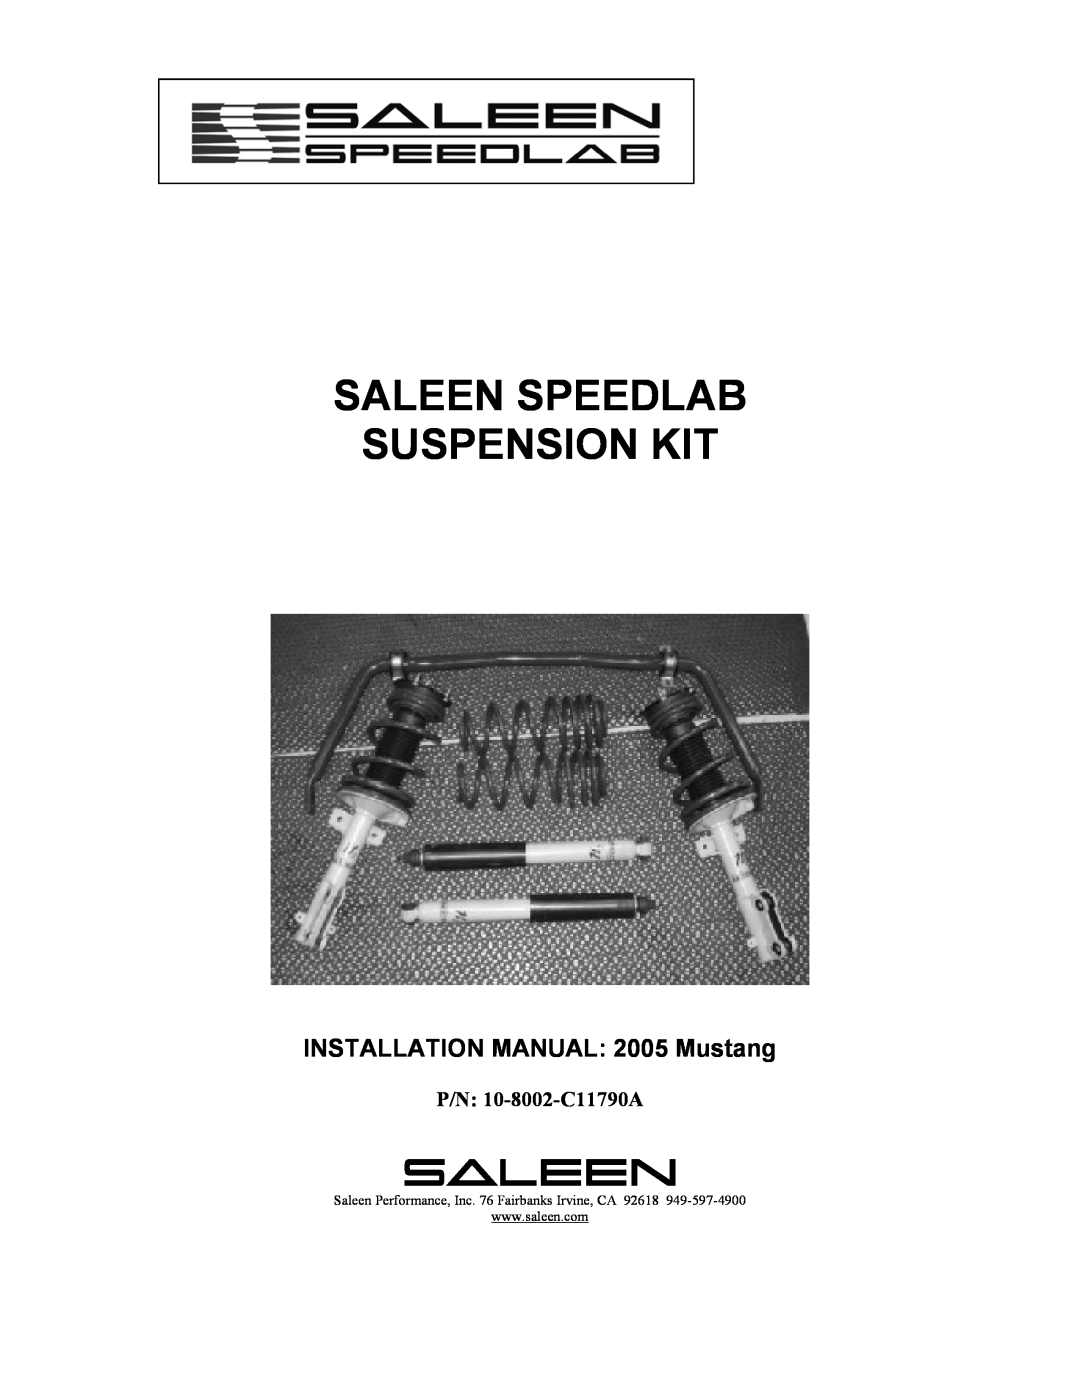 Saleen 10-8002-C11790A installation manual = Saleen Speedlab Suspension Kit, INSTALLATION MANUAL 2005 Mustang 